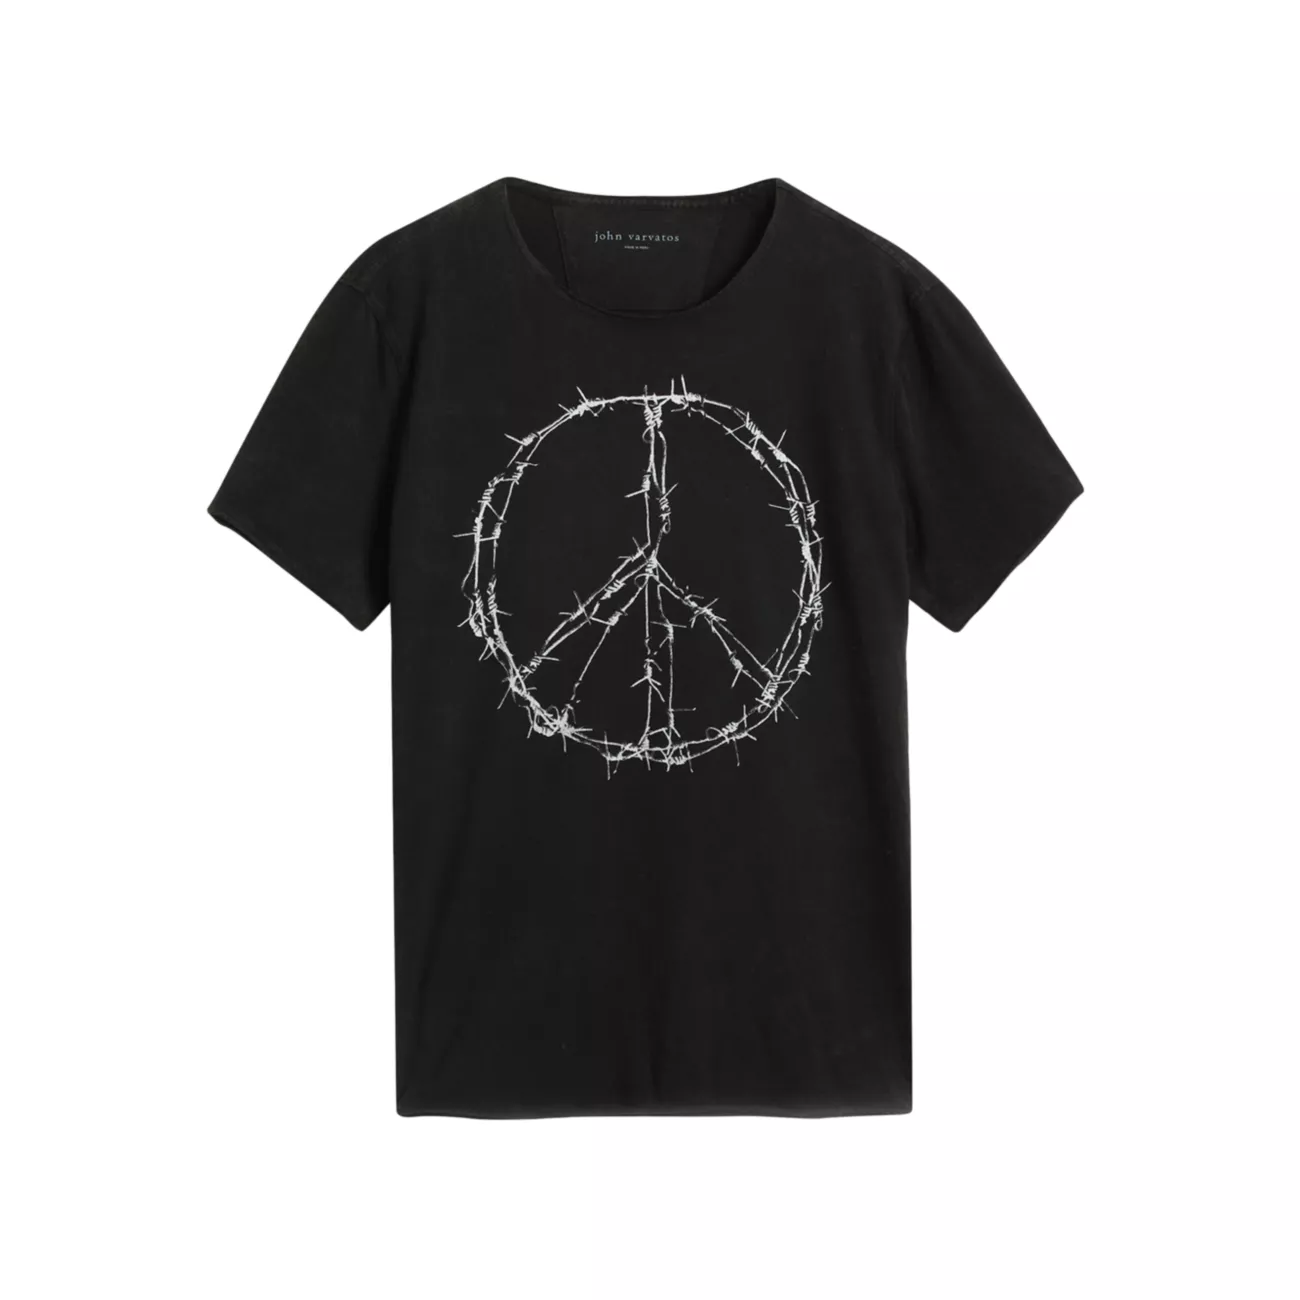 Barbwire Peace T-Shirt John Varvatos